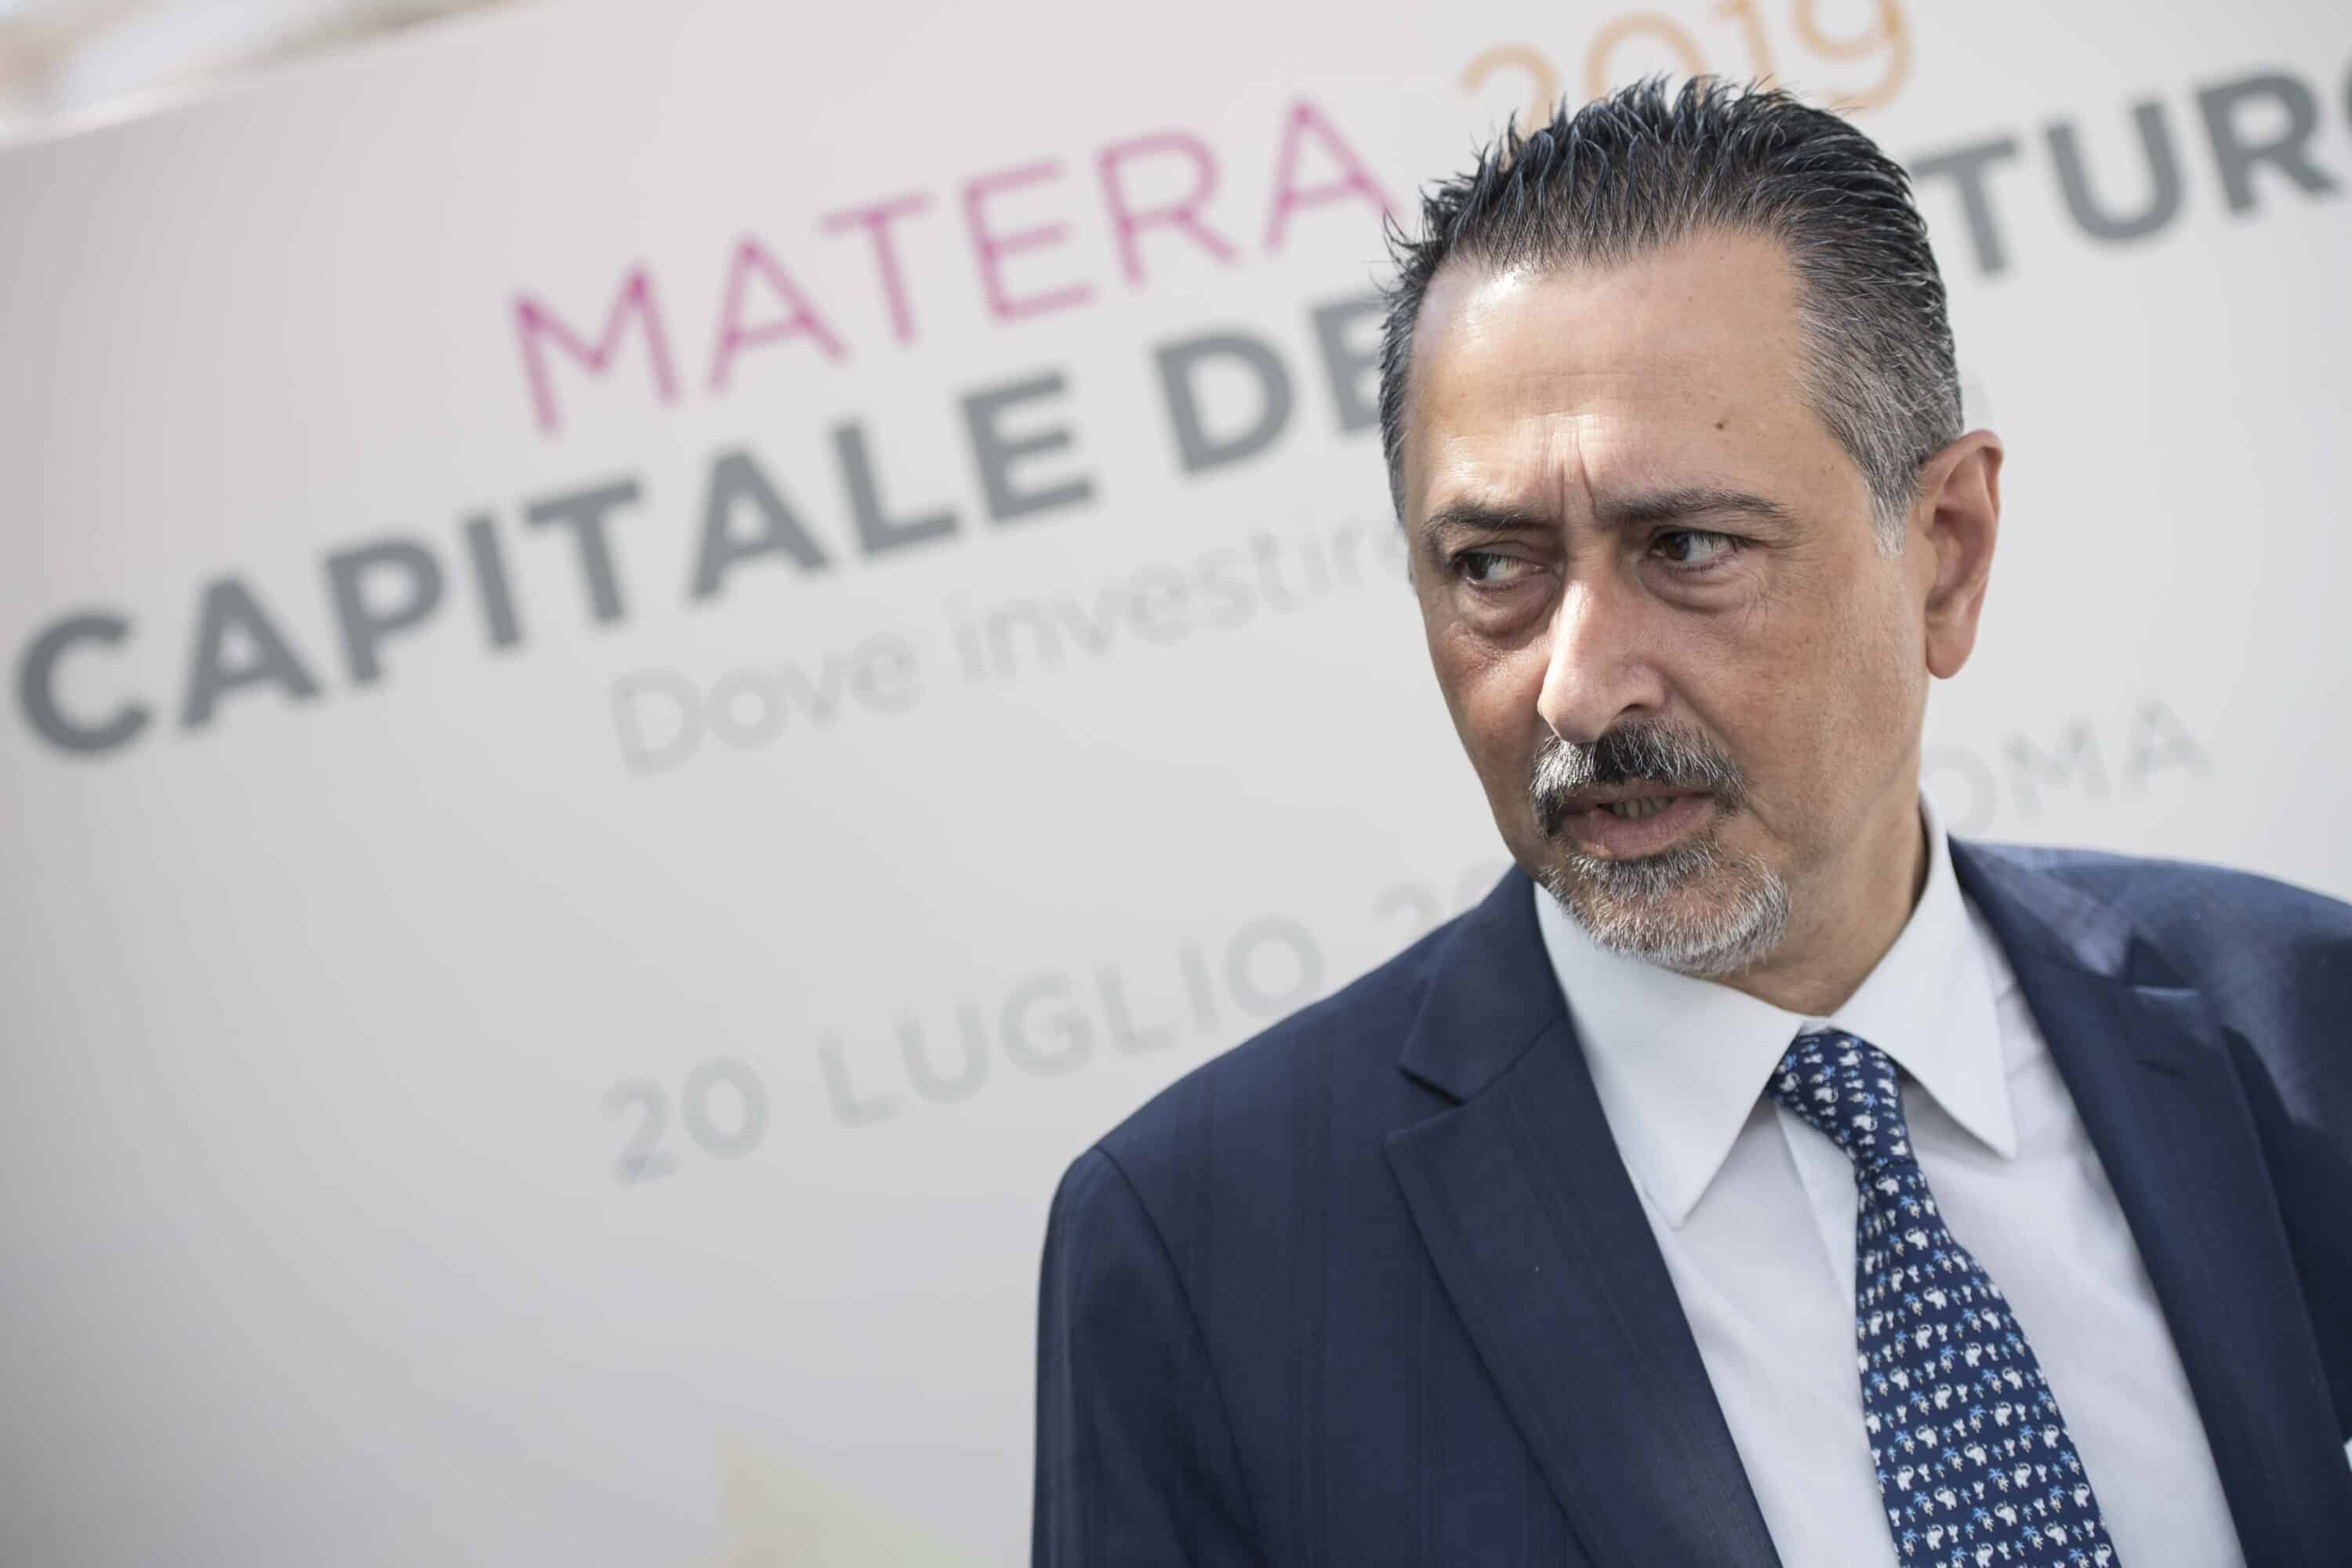 Basilicata, audio di Pittella: “Per Pd sono un ebreo che deve morire”. Poi le scuse